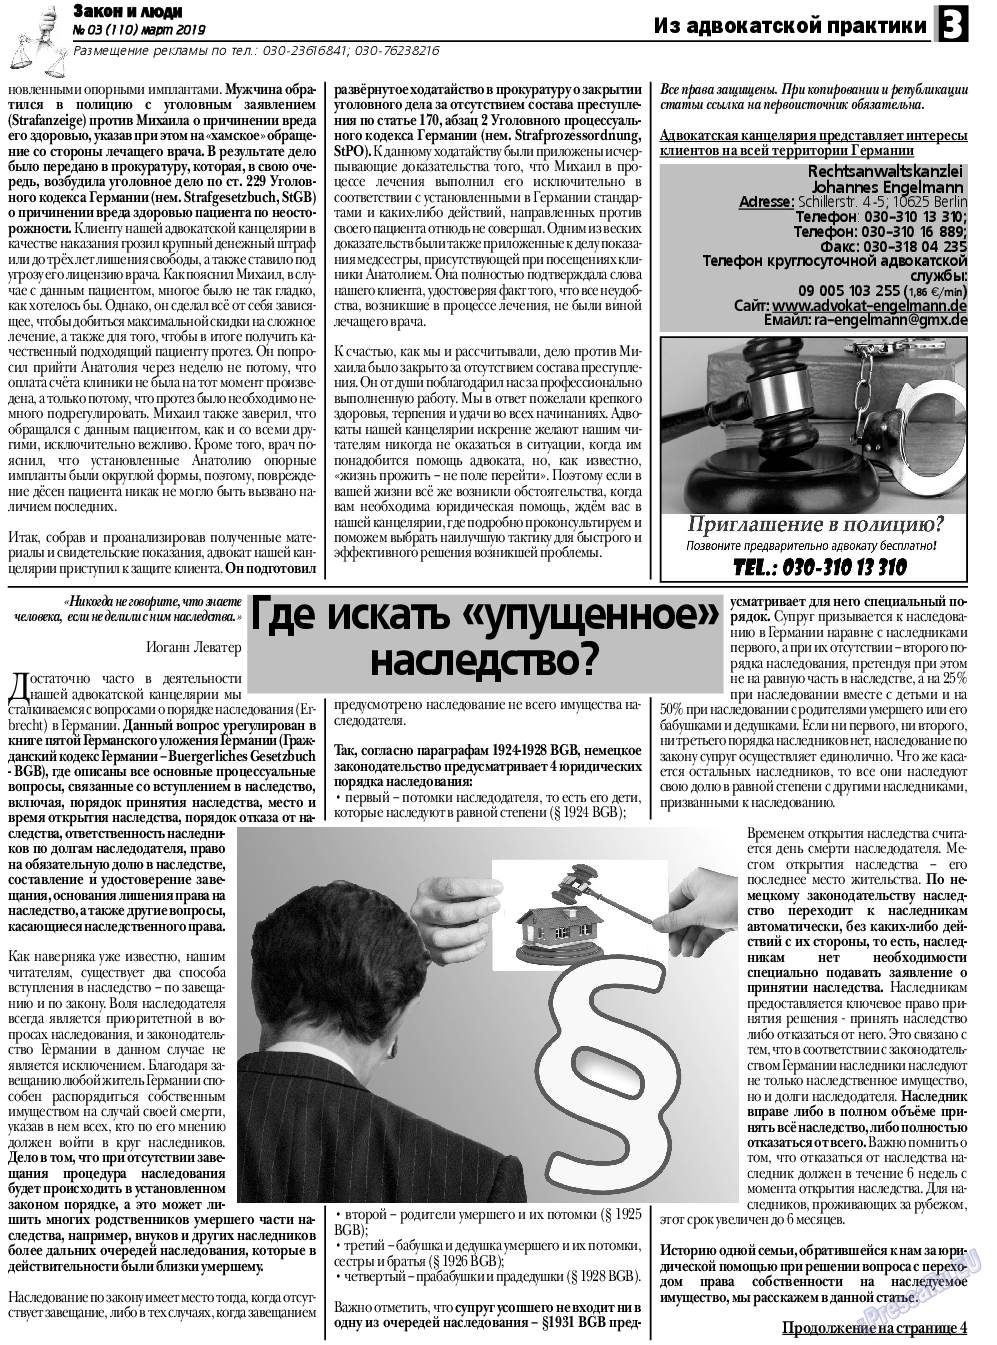 Закон и люди, газета. 2019 №3 стр.3